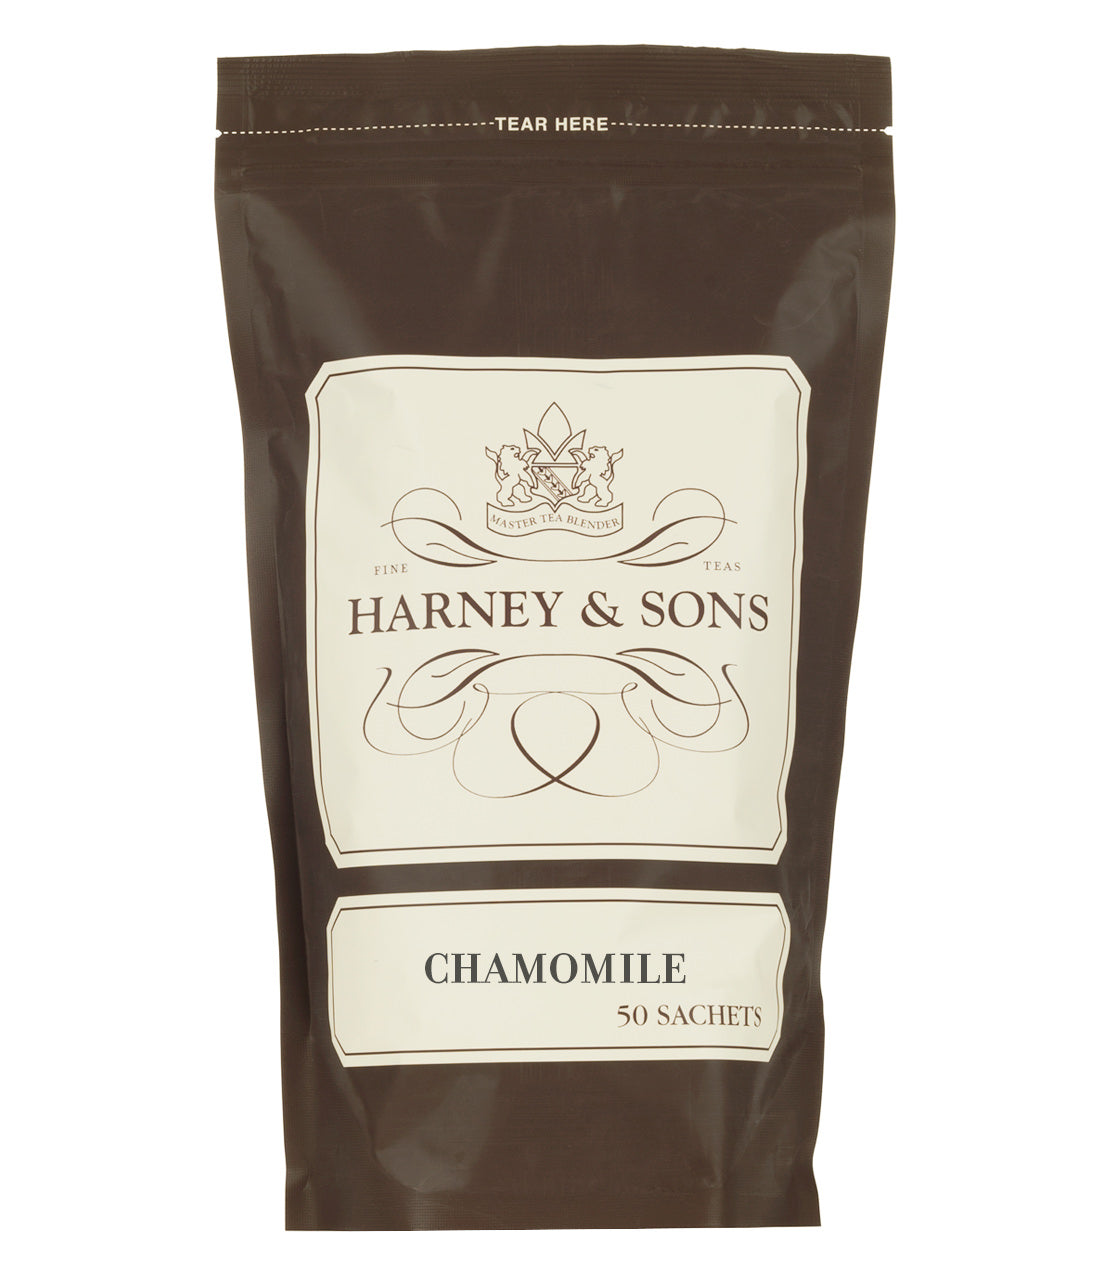 Chamomile, Bag of 50 Sachets - Sachets Bag of 50 Sachets - Harney & Sons Fine Teas